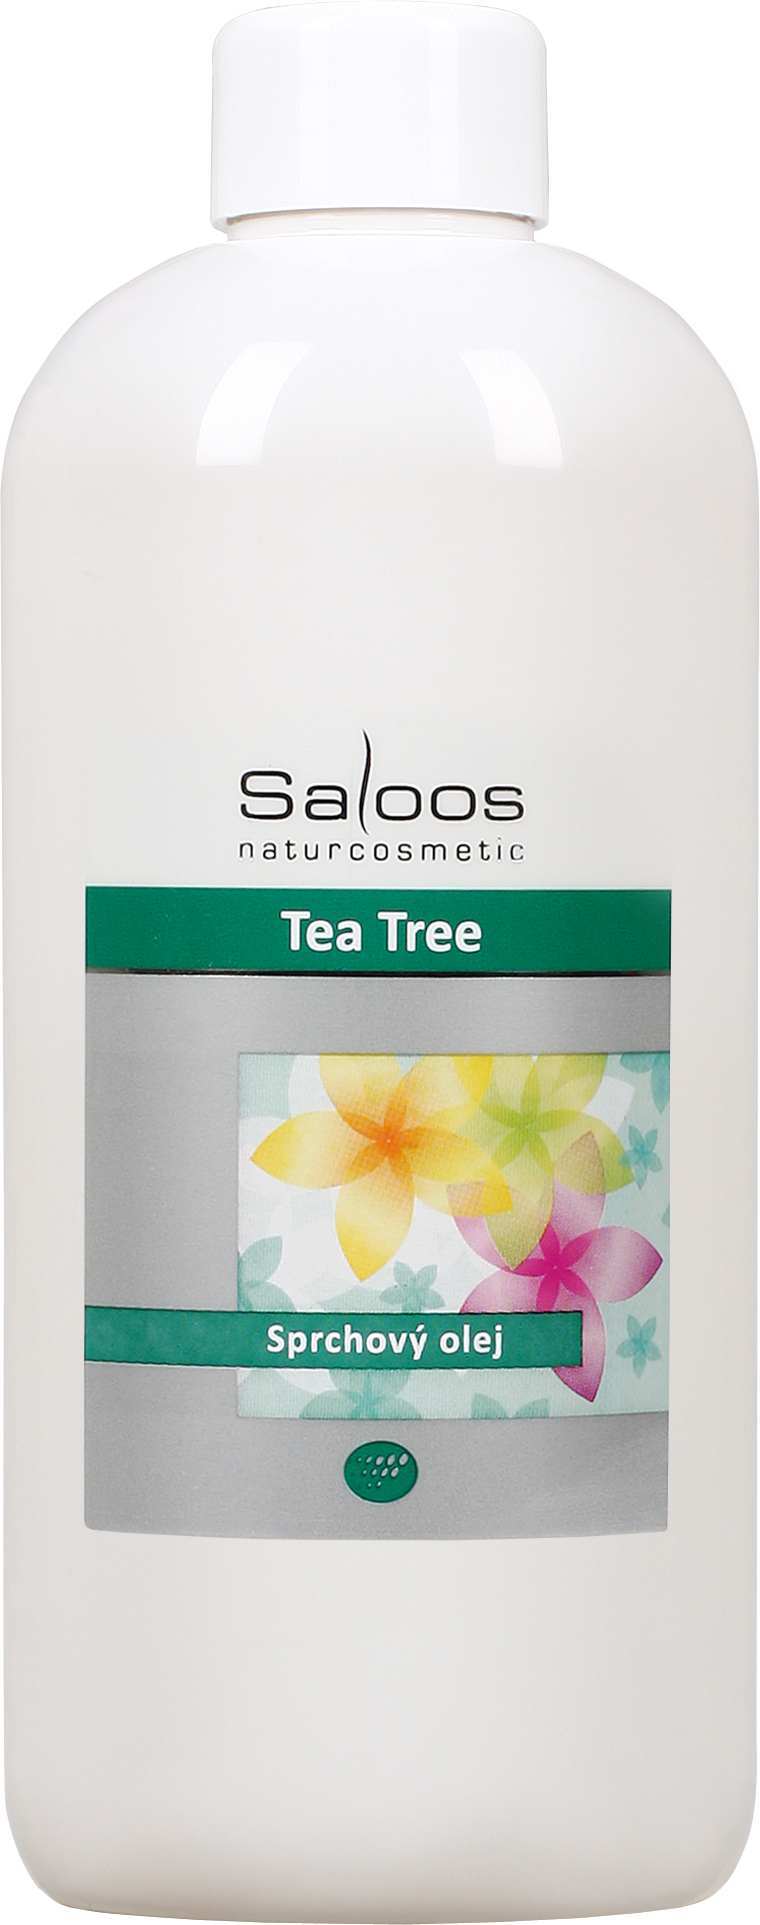 Saloos Tea tree - sprchový olej Balení: 250 ml